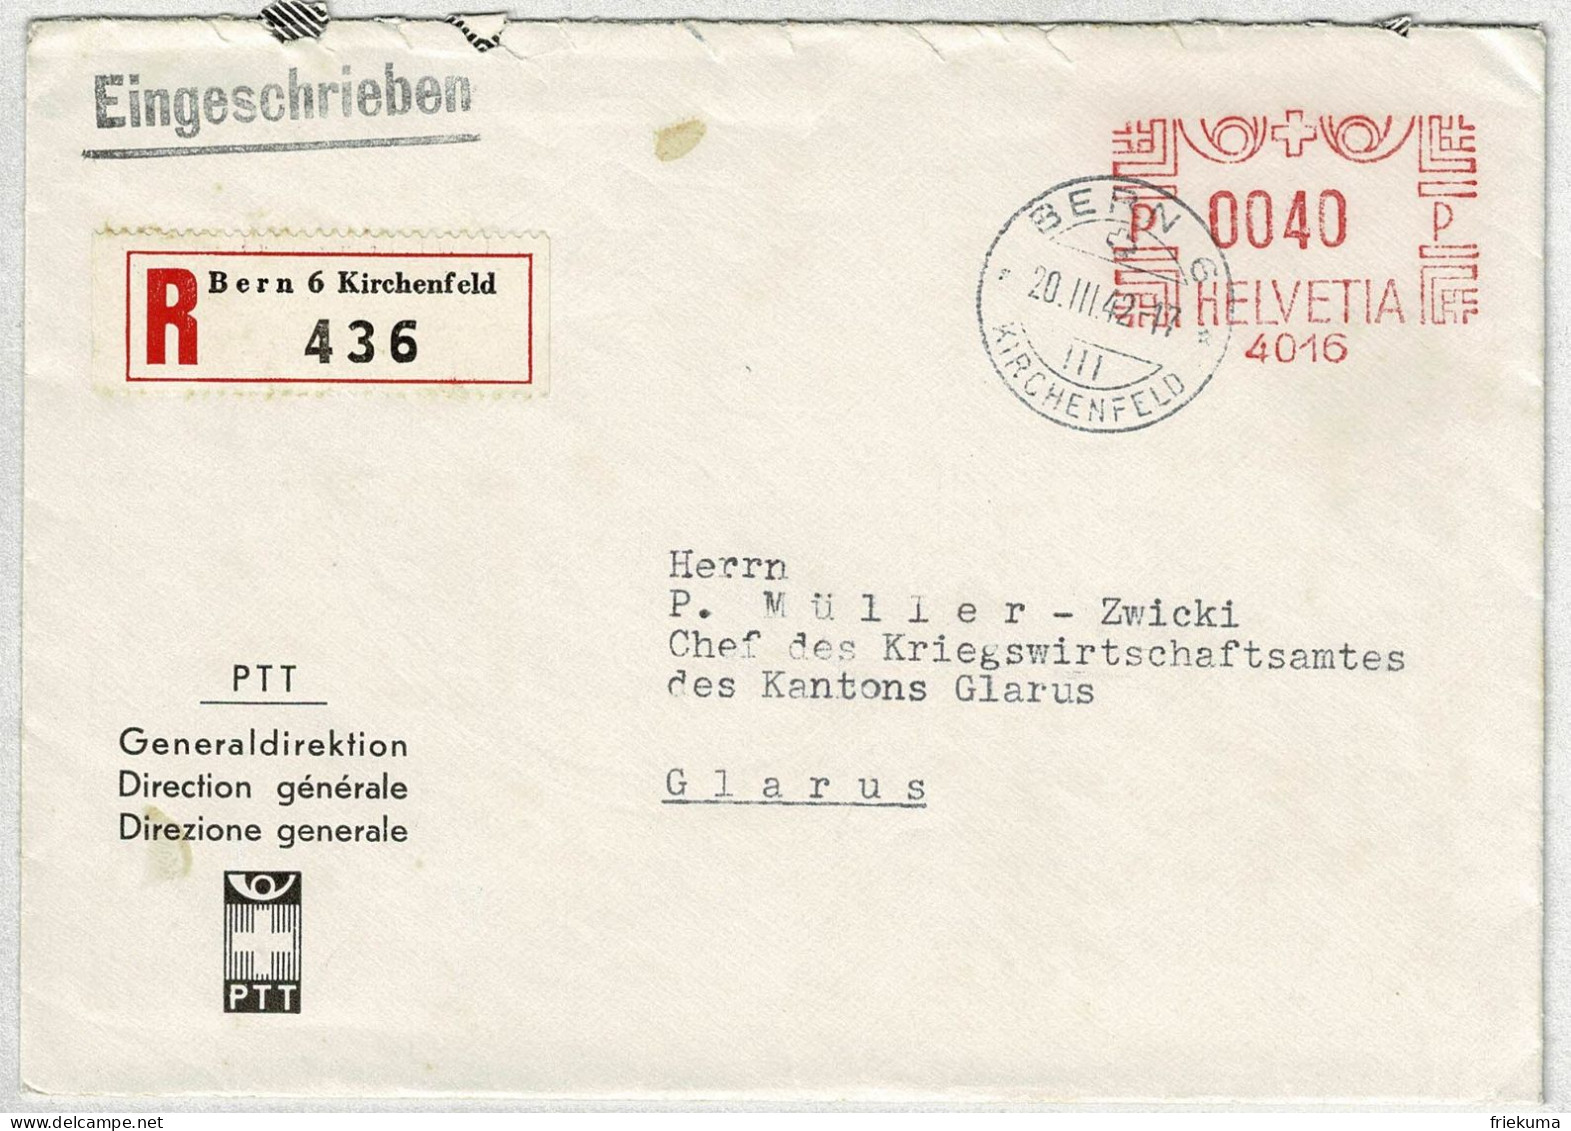 Schweiz 1942, Brief Einschreiben Freistempel Generaldirektion PTT Bern - Glarus,  Souvenir Ausgabetag Altstoffmarken  - Frankeermachinen